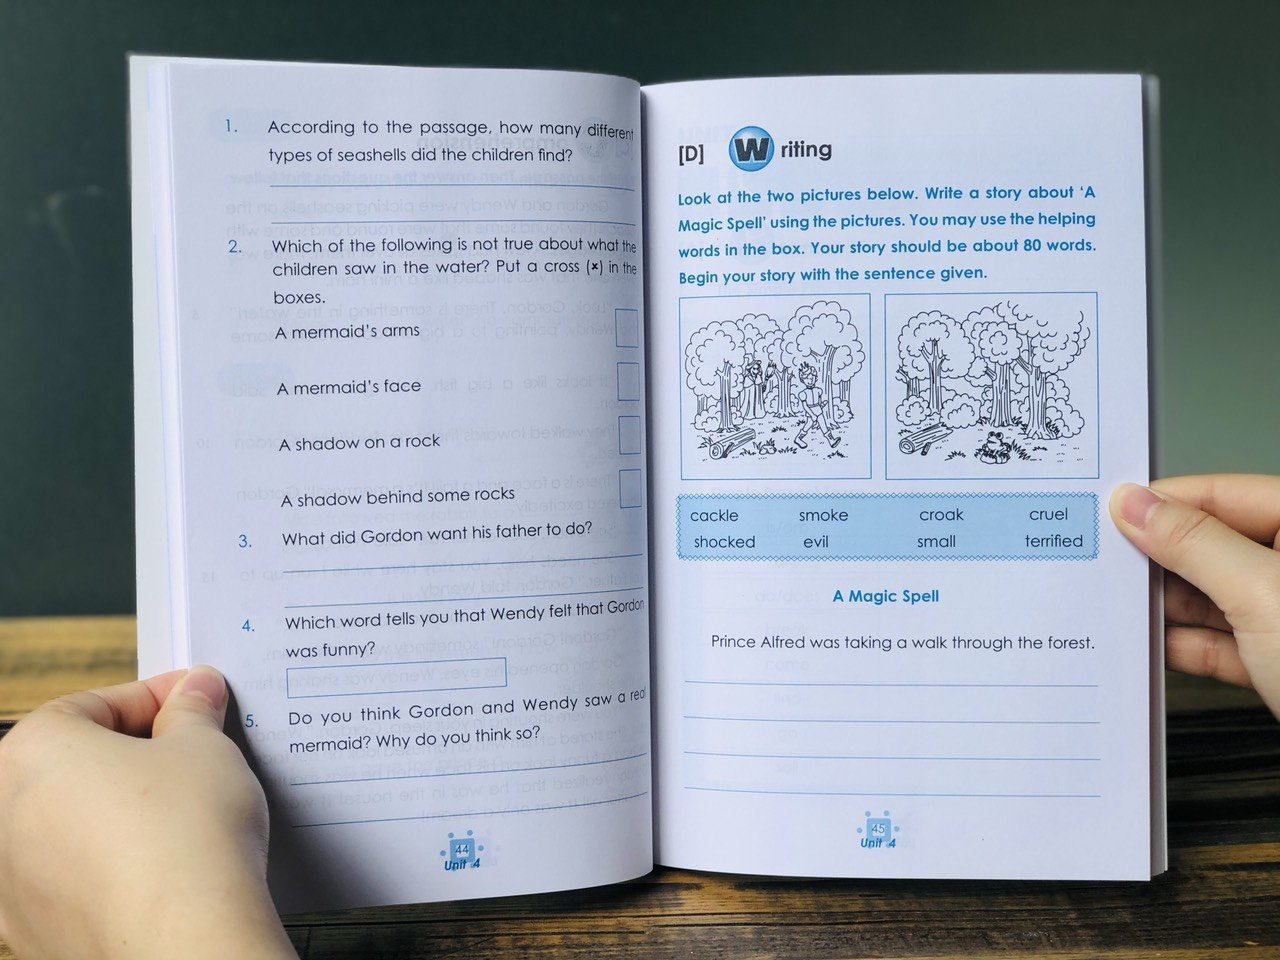 Sách : Learning English 1 và 2 -  Dành Cho Học sinh Từ 6 đến 8 tuổi ( tập 1, tập 2 )